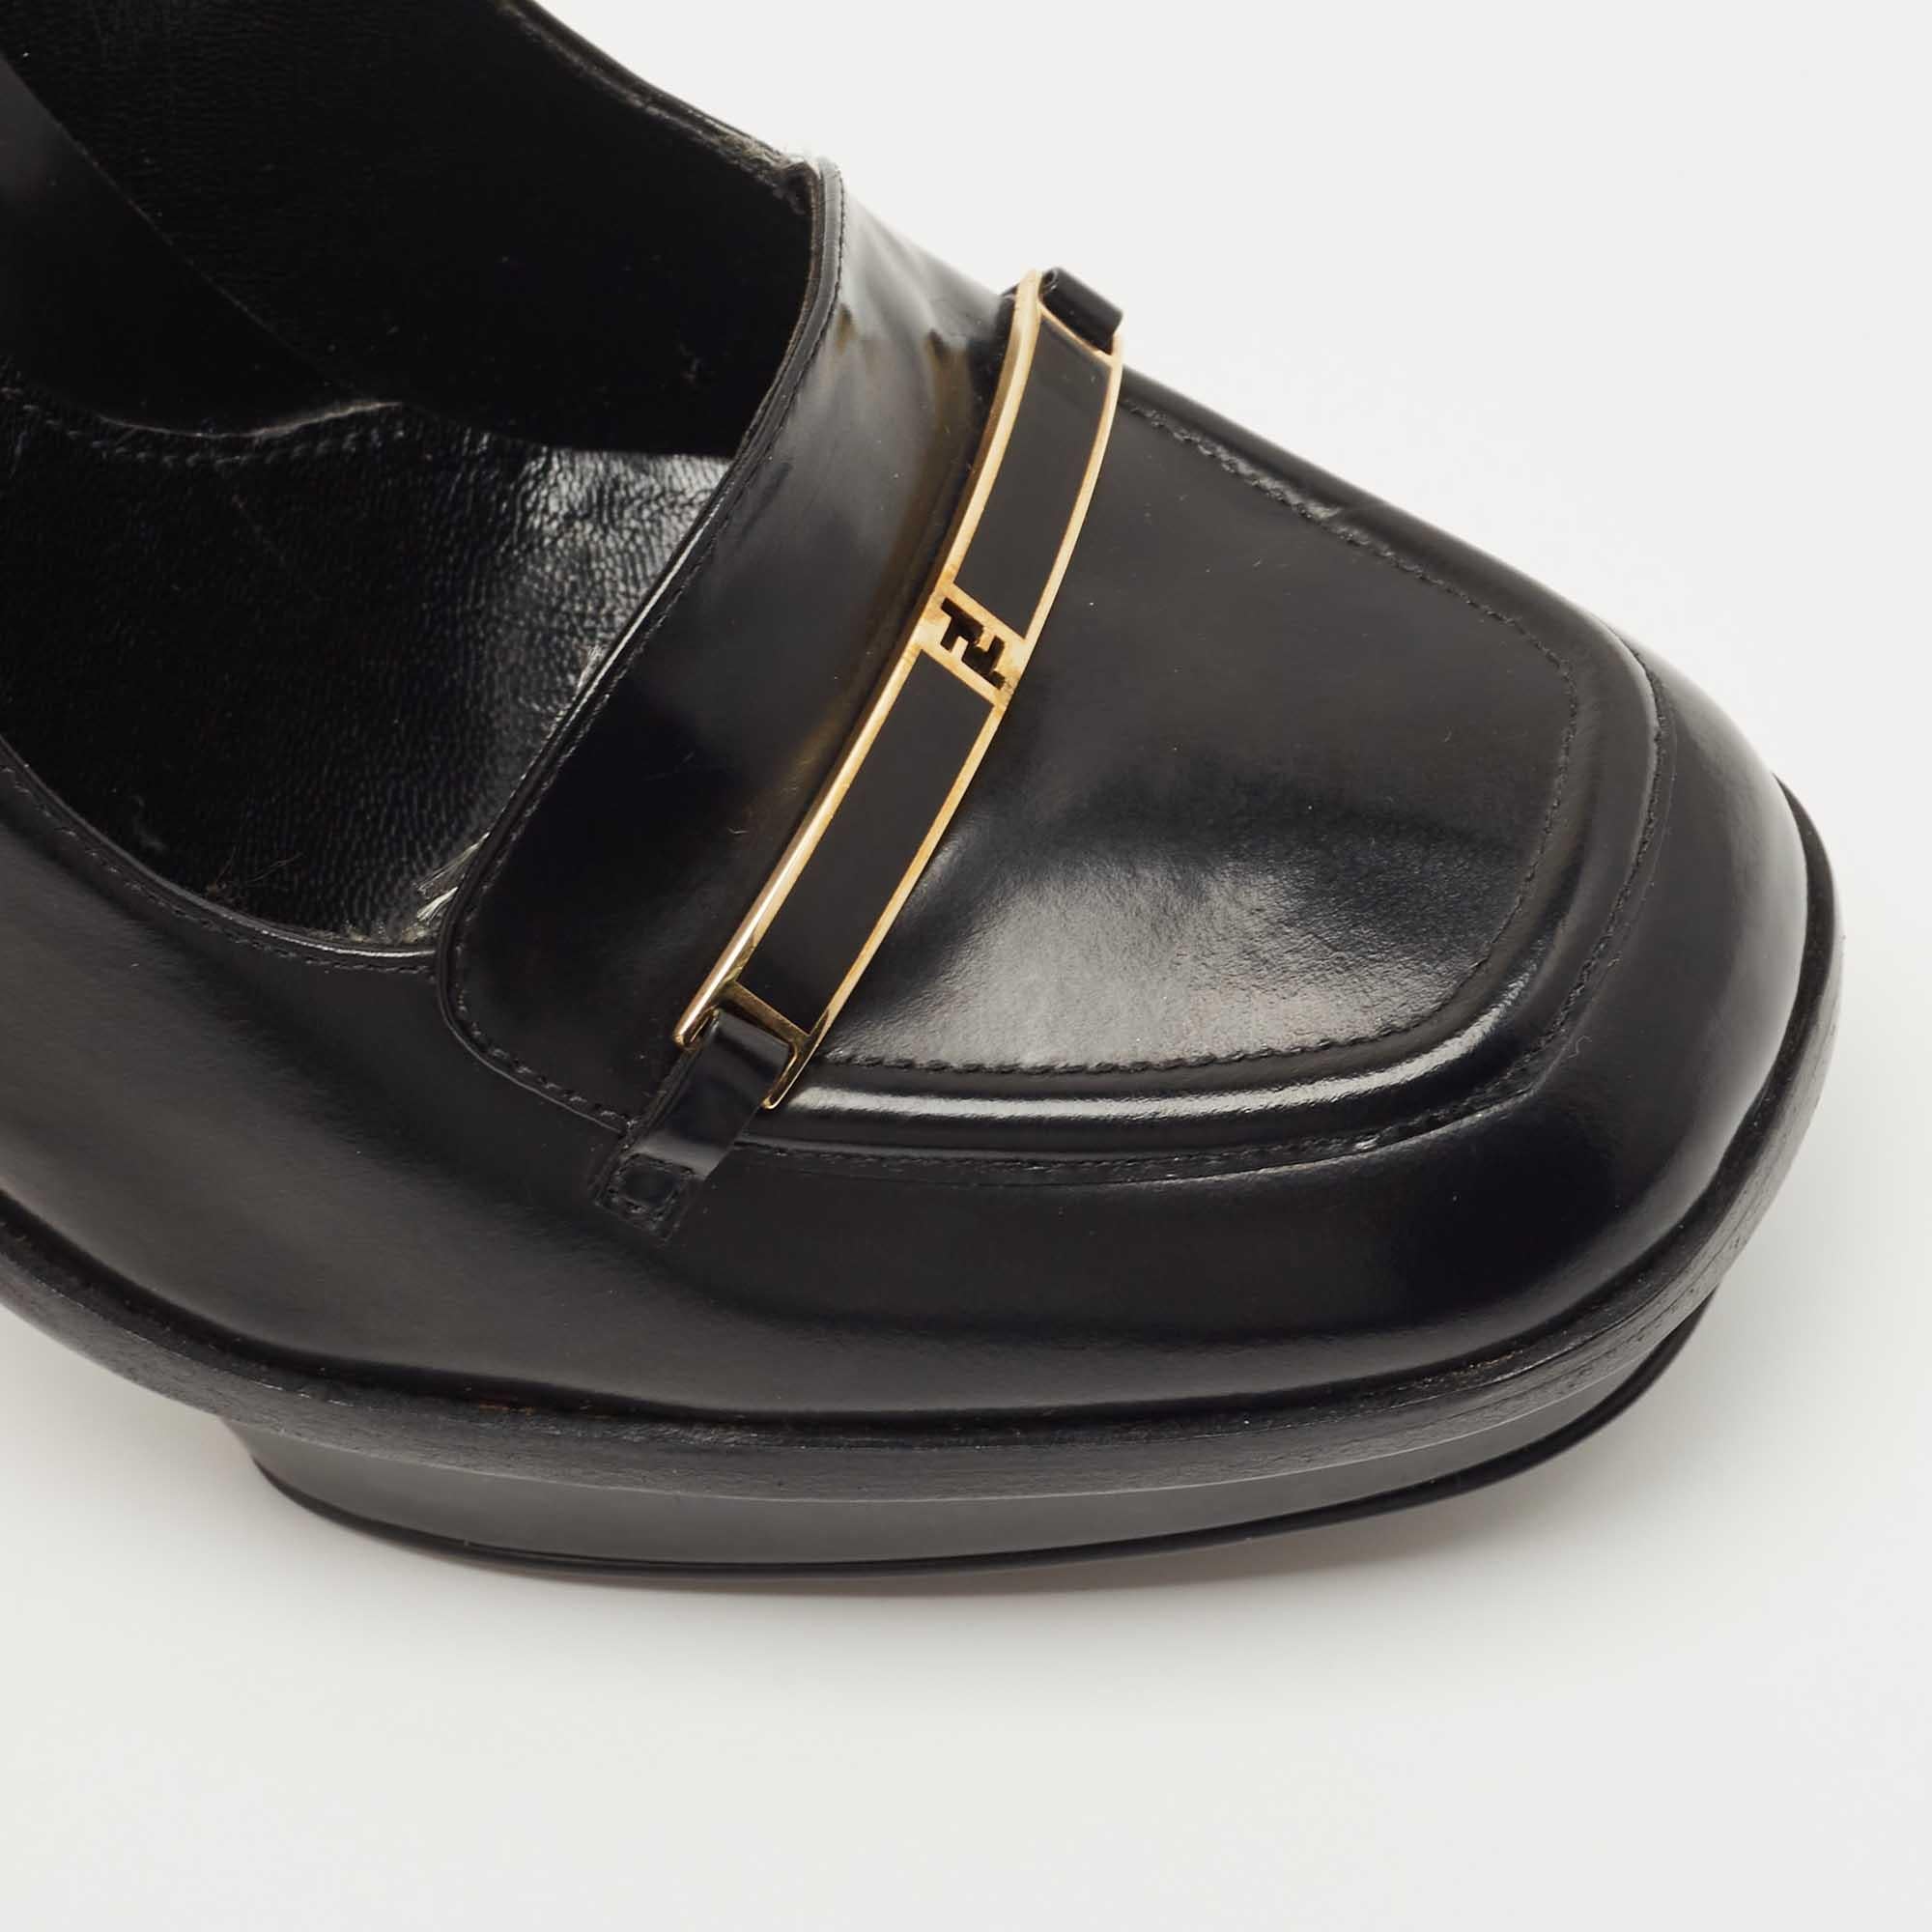 Fendi Black Leather Logo Loafer Pumps Size 38.5 3